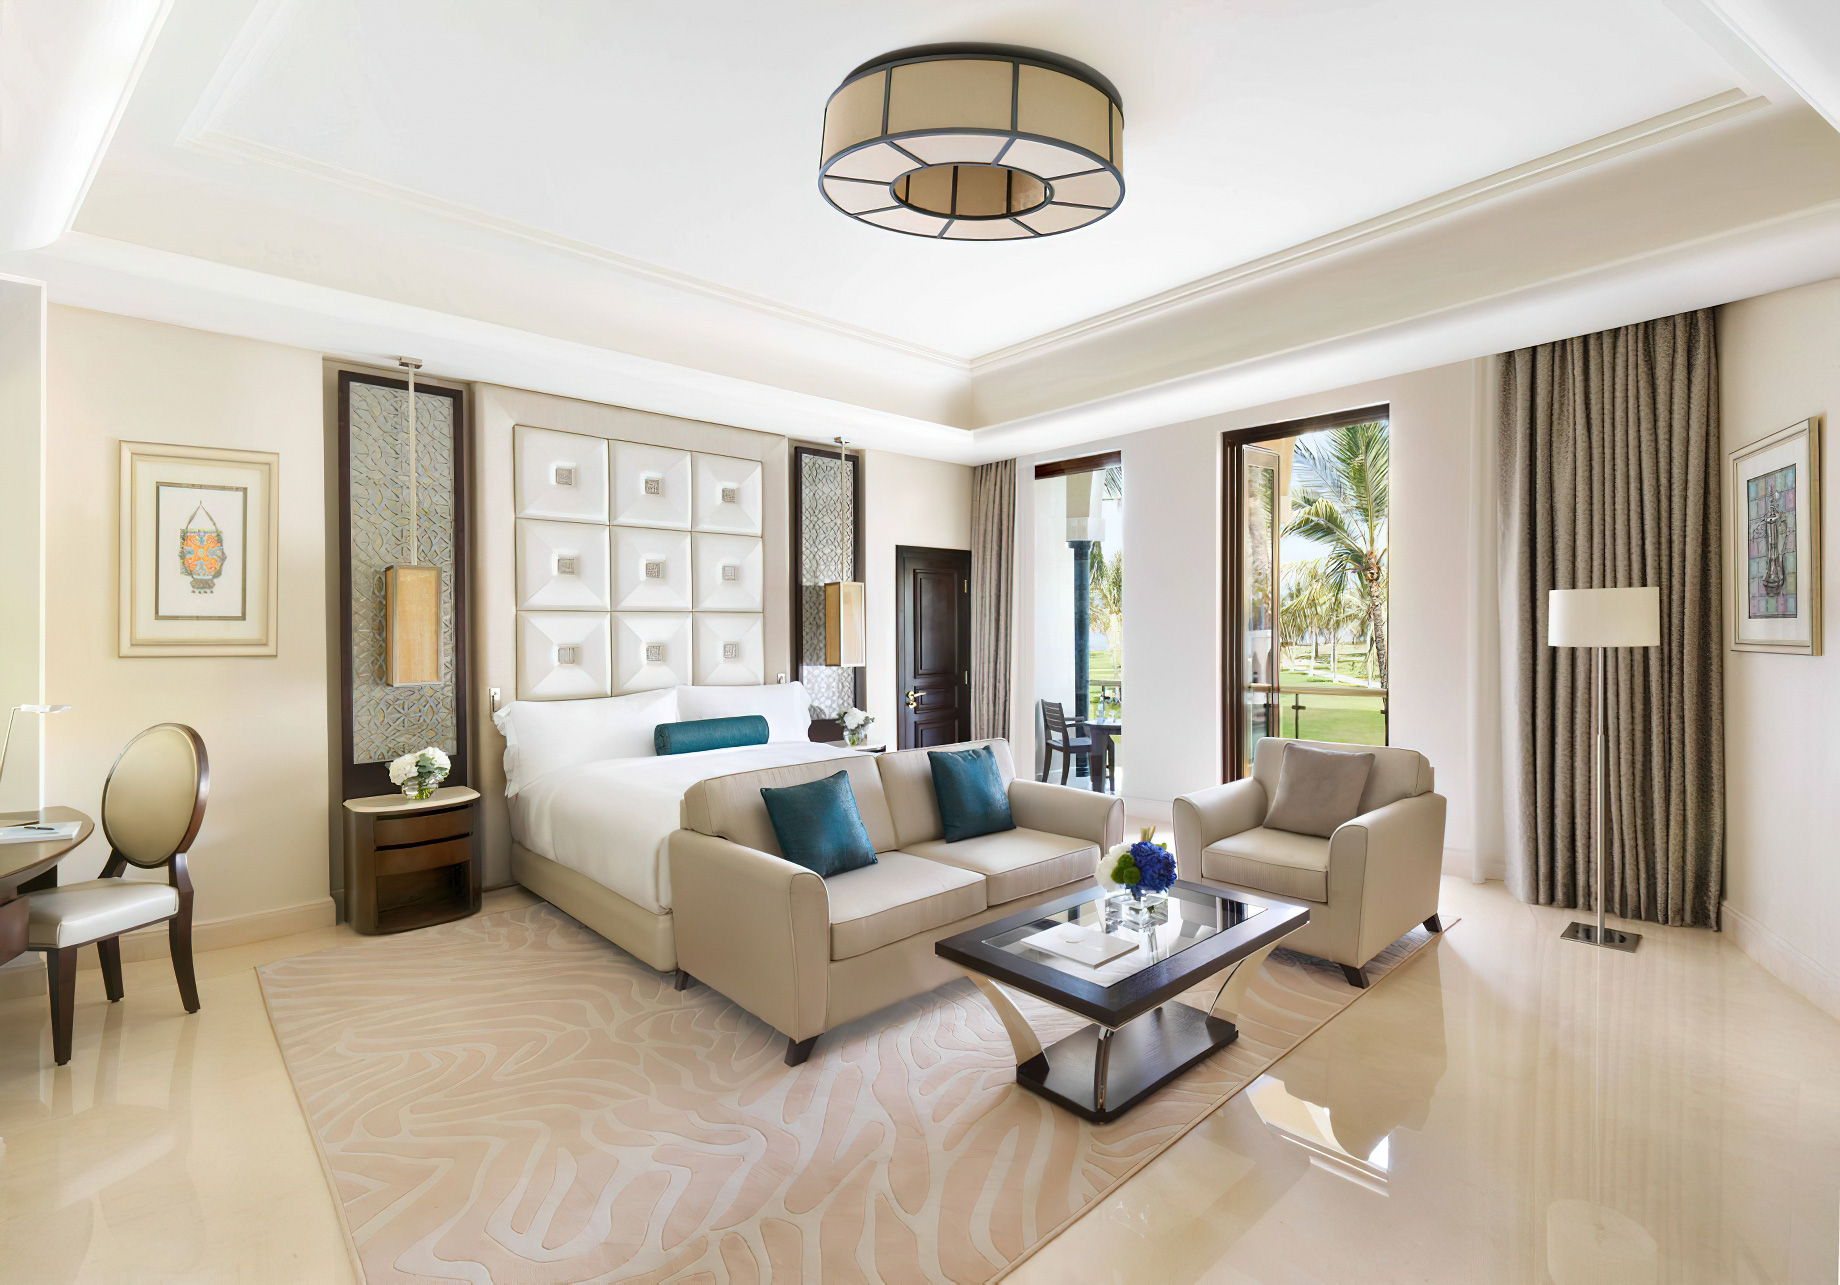 Al Bustan Palace, A Ritz-Carlton Hotel – Muscat, Oman – Junior Suite Bedroom